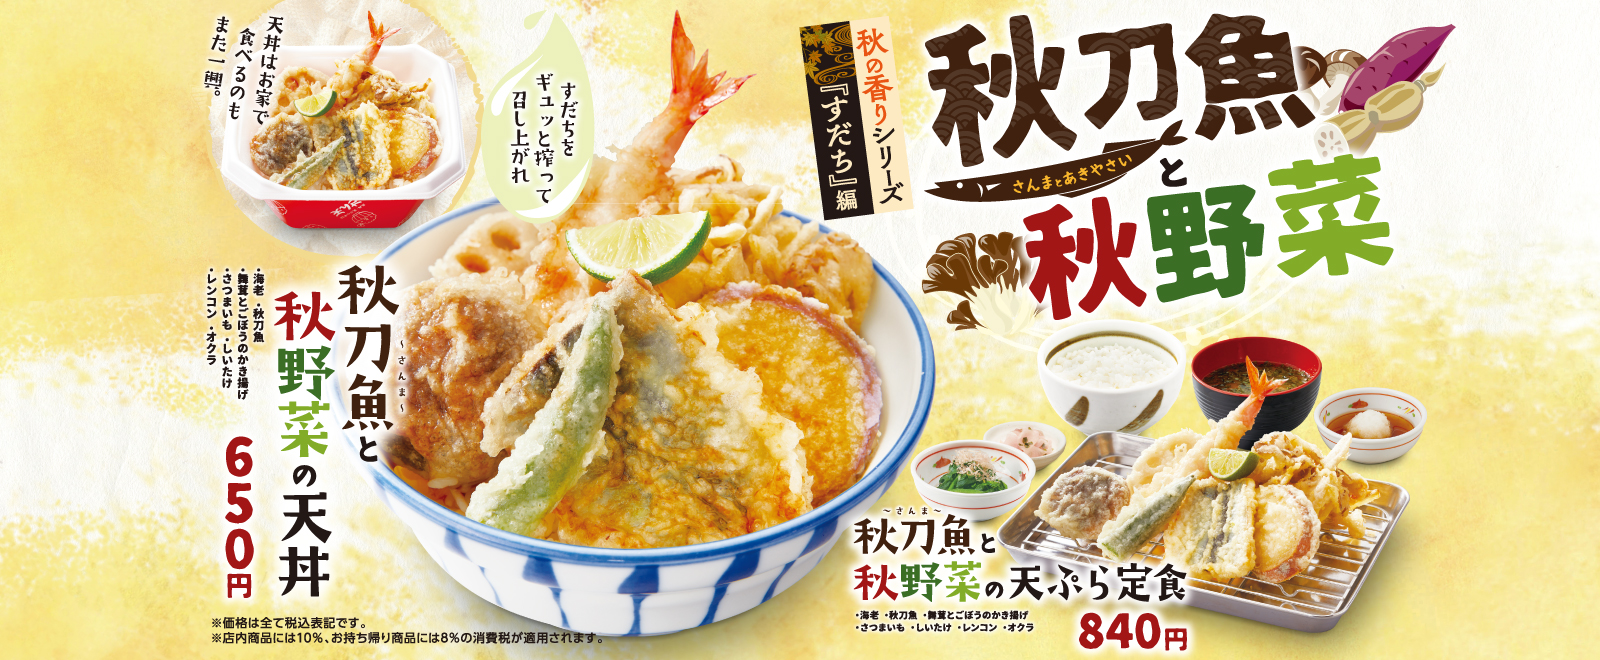 秋刀魚と秋野菜フェア 天丼 天ぷら本舗 さん天